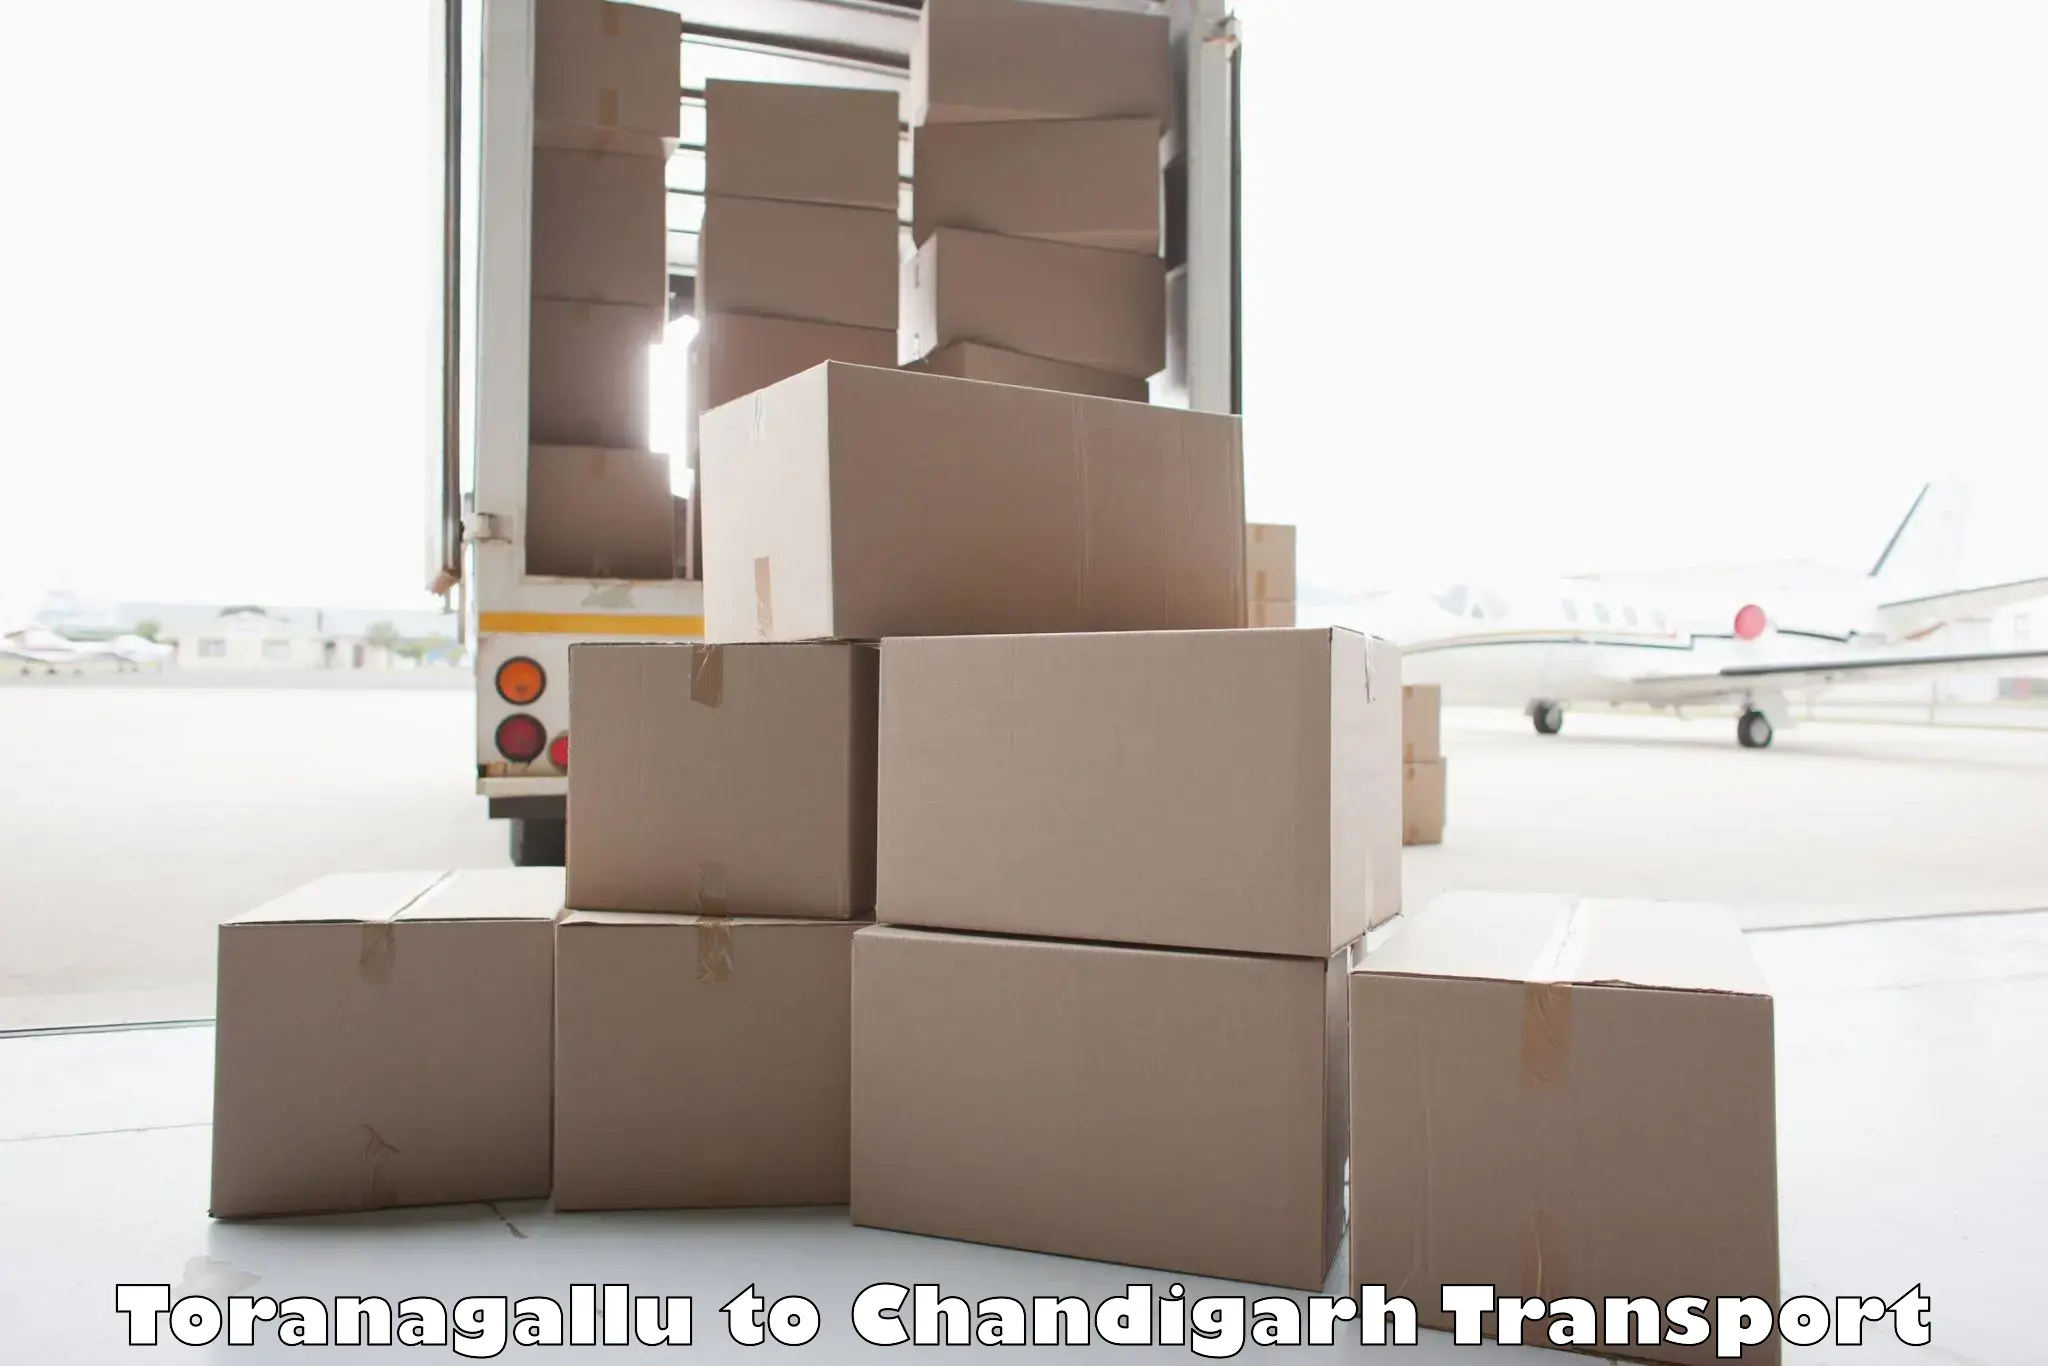 Goods transport services Toranagallu to Chandigarh